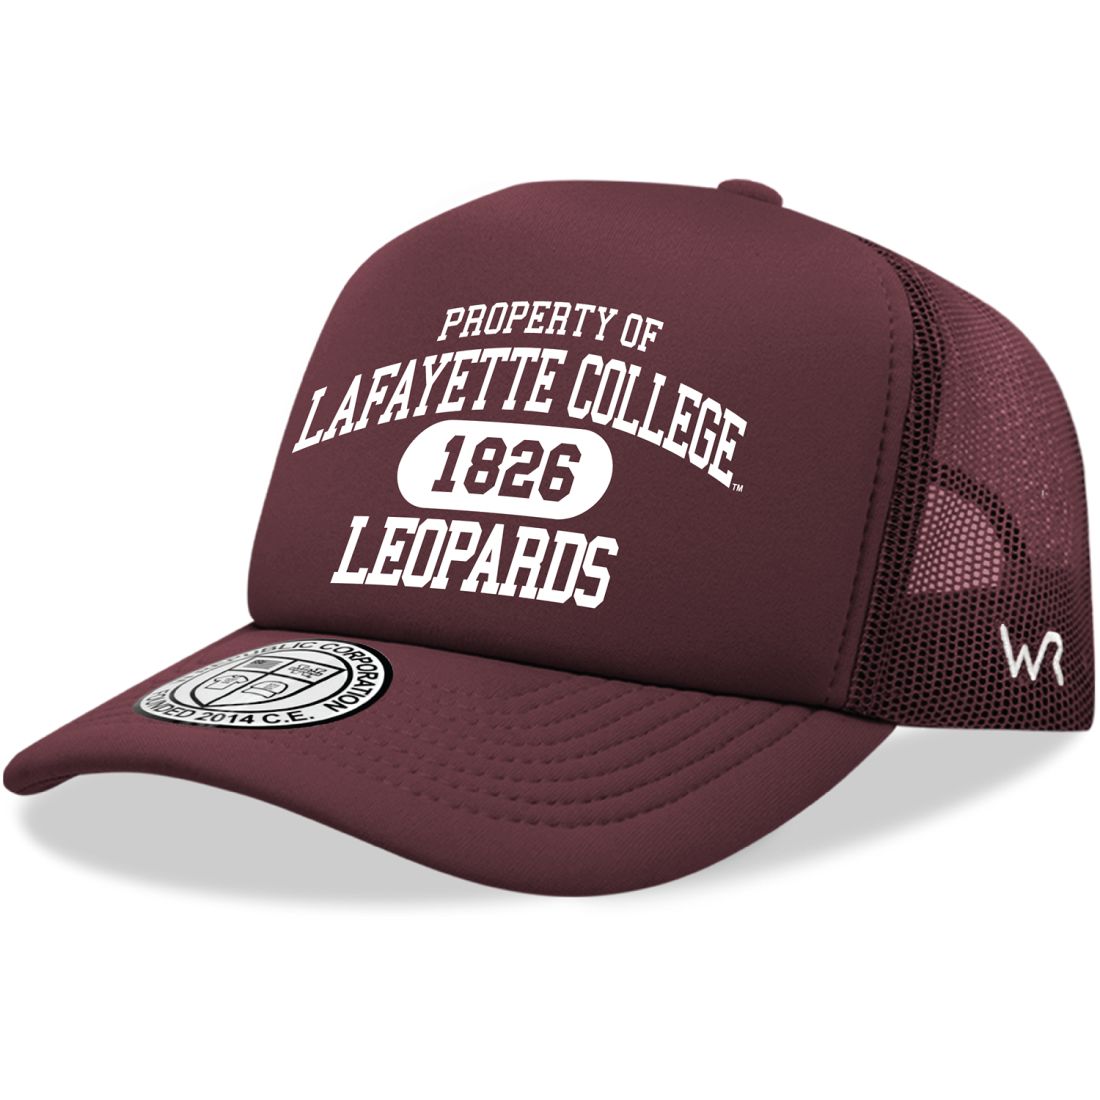 Lafayette College Leopards Property Foam Trucker Hats